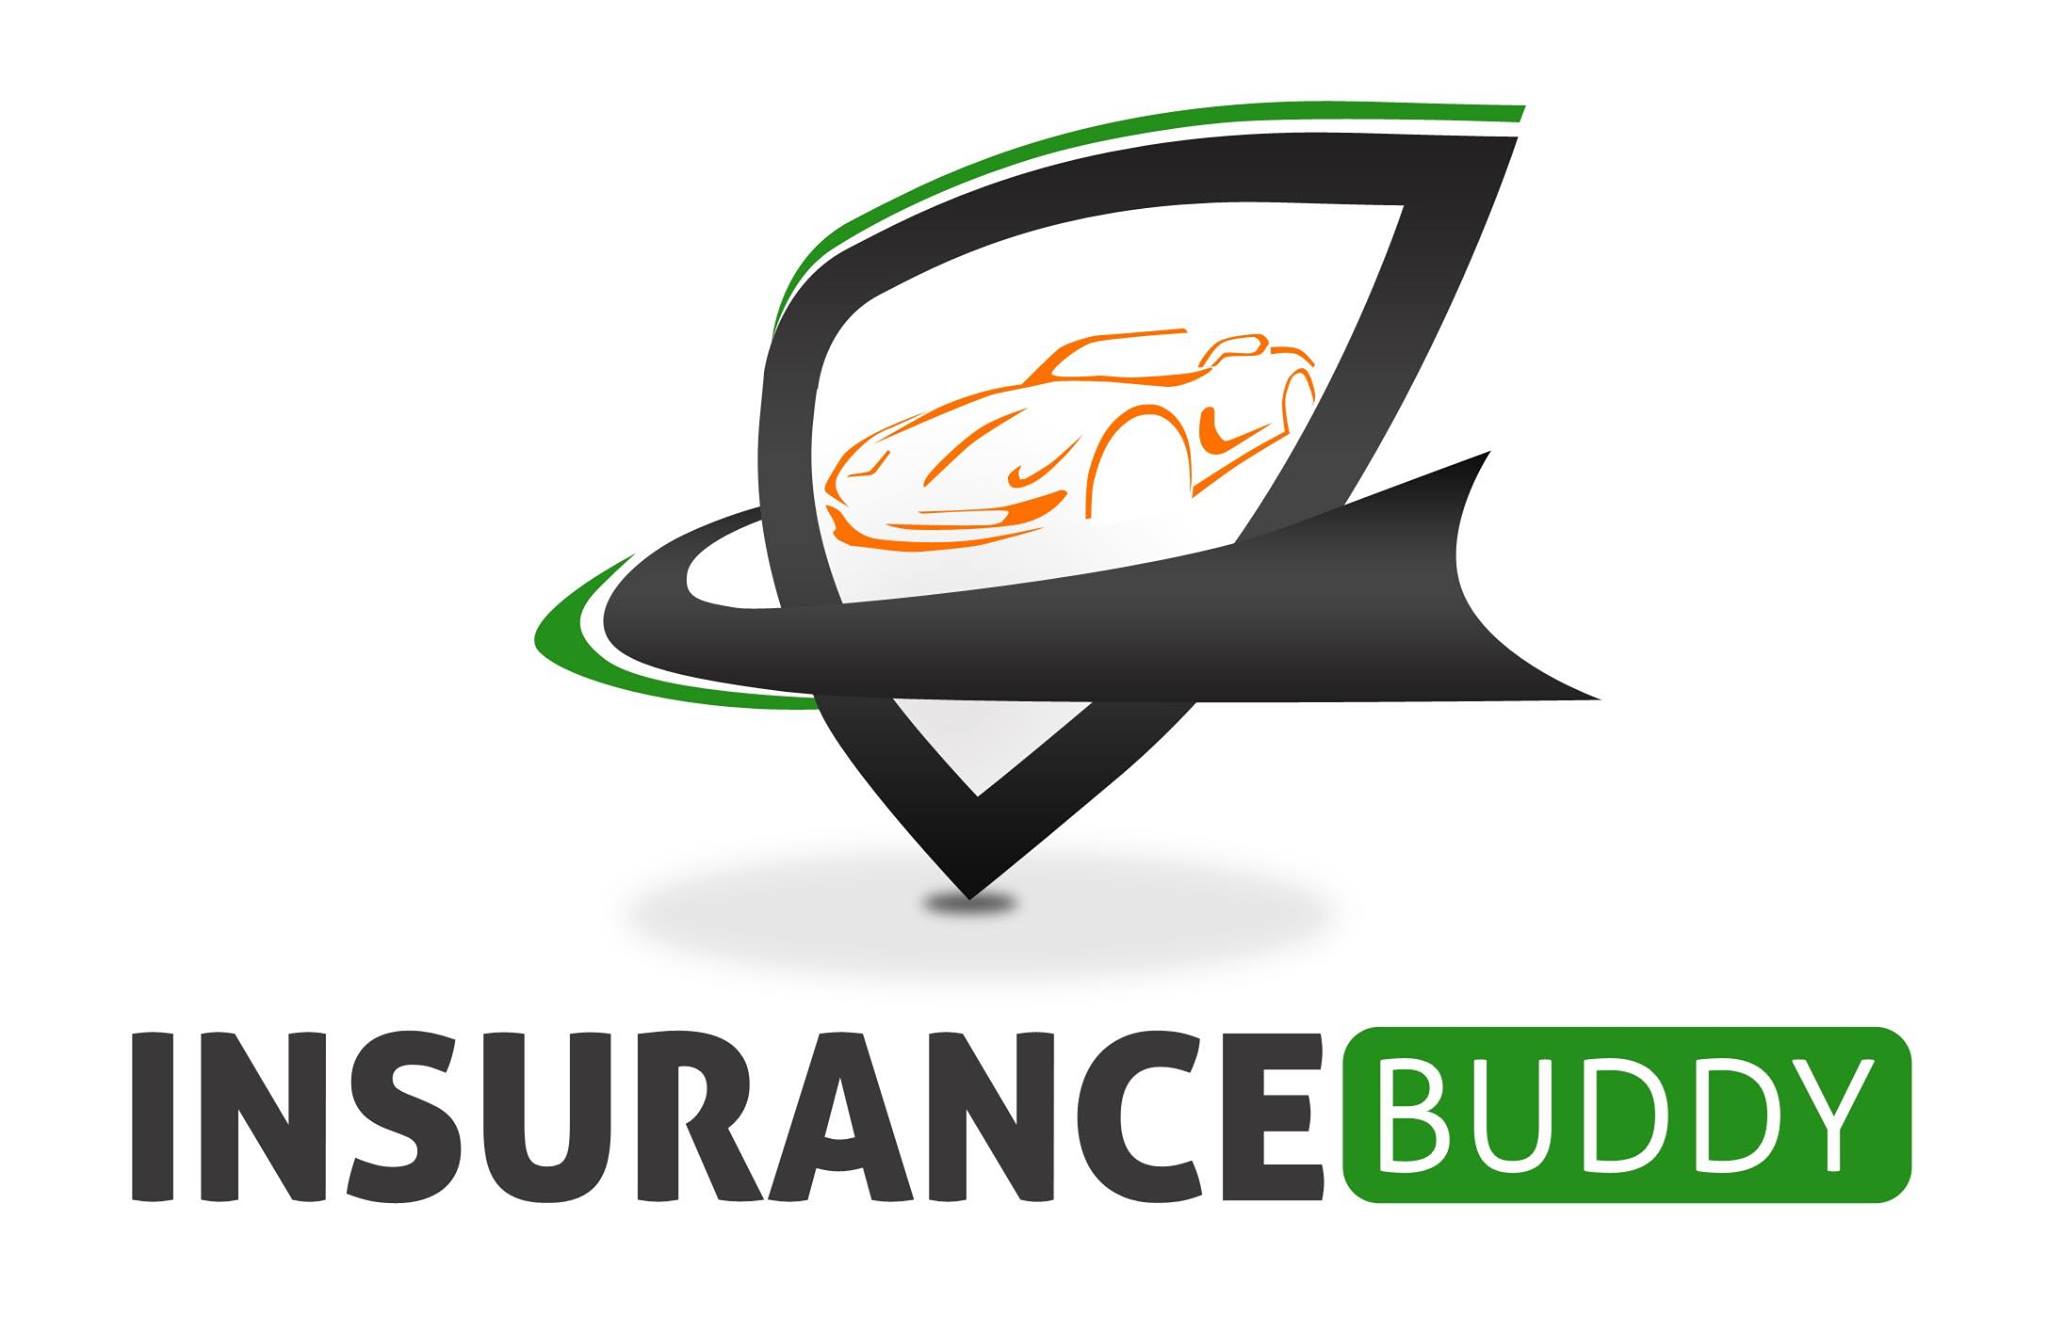 Insurance Buddy 2021 Roundup